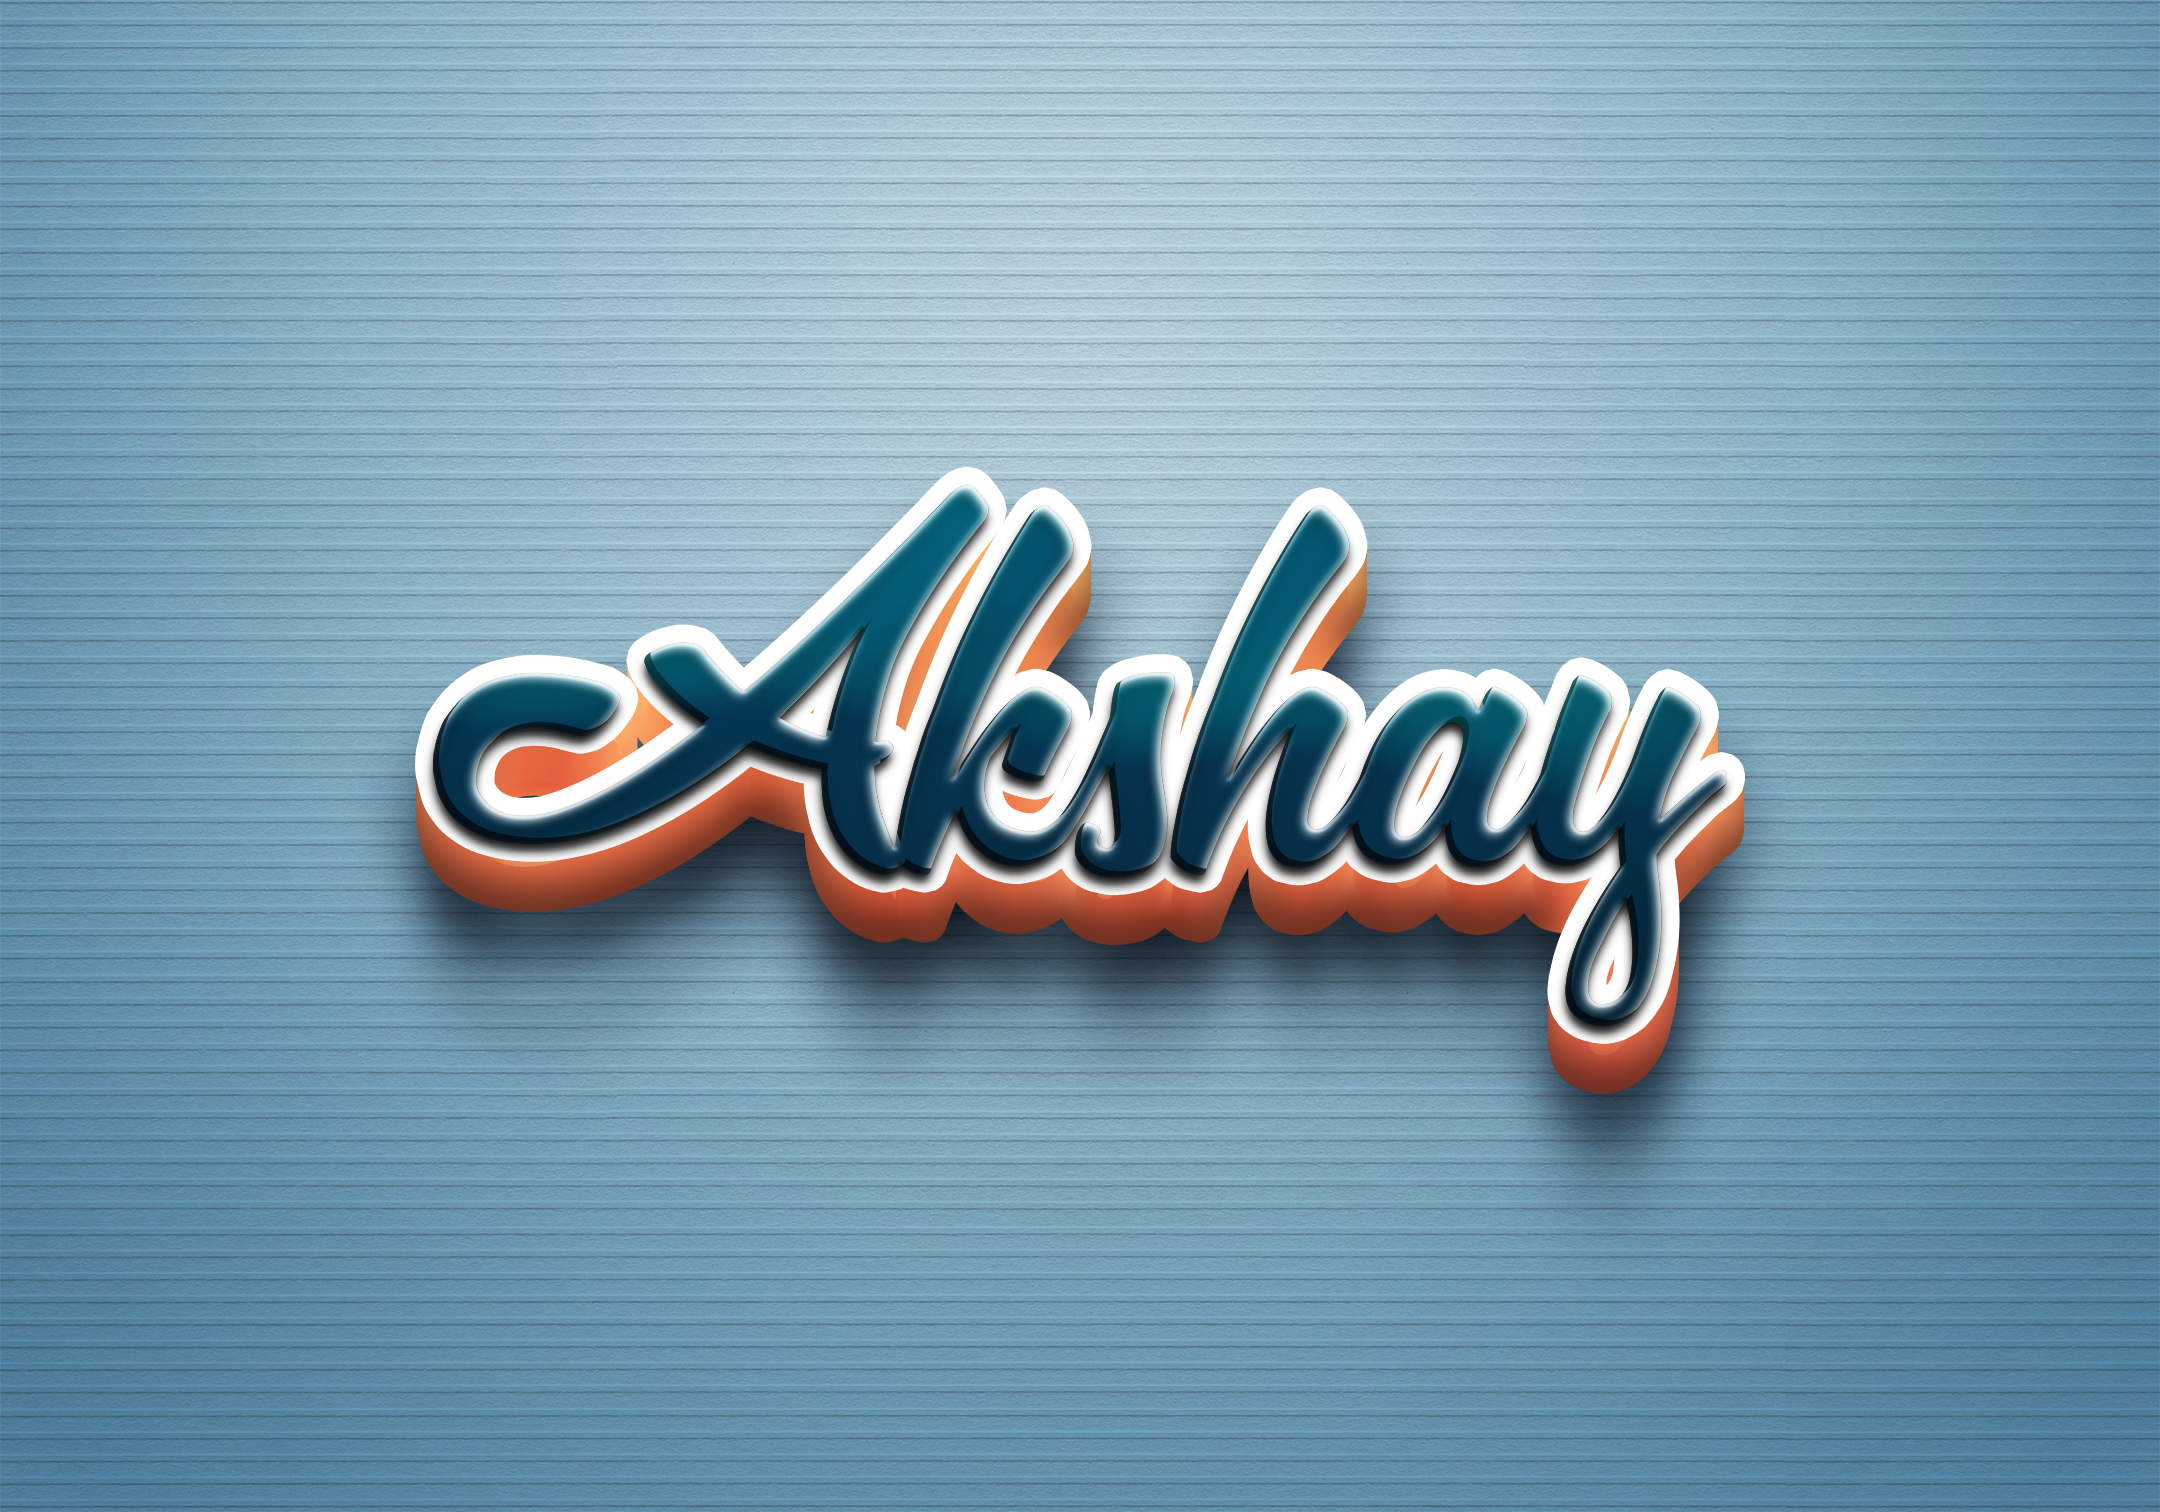 Akshay name Marathi calligraphy